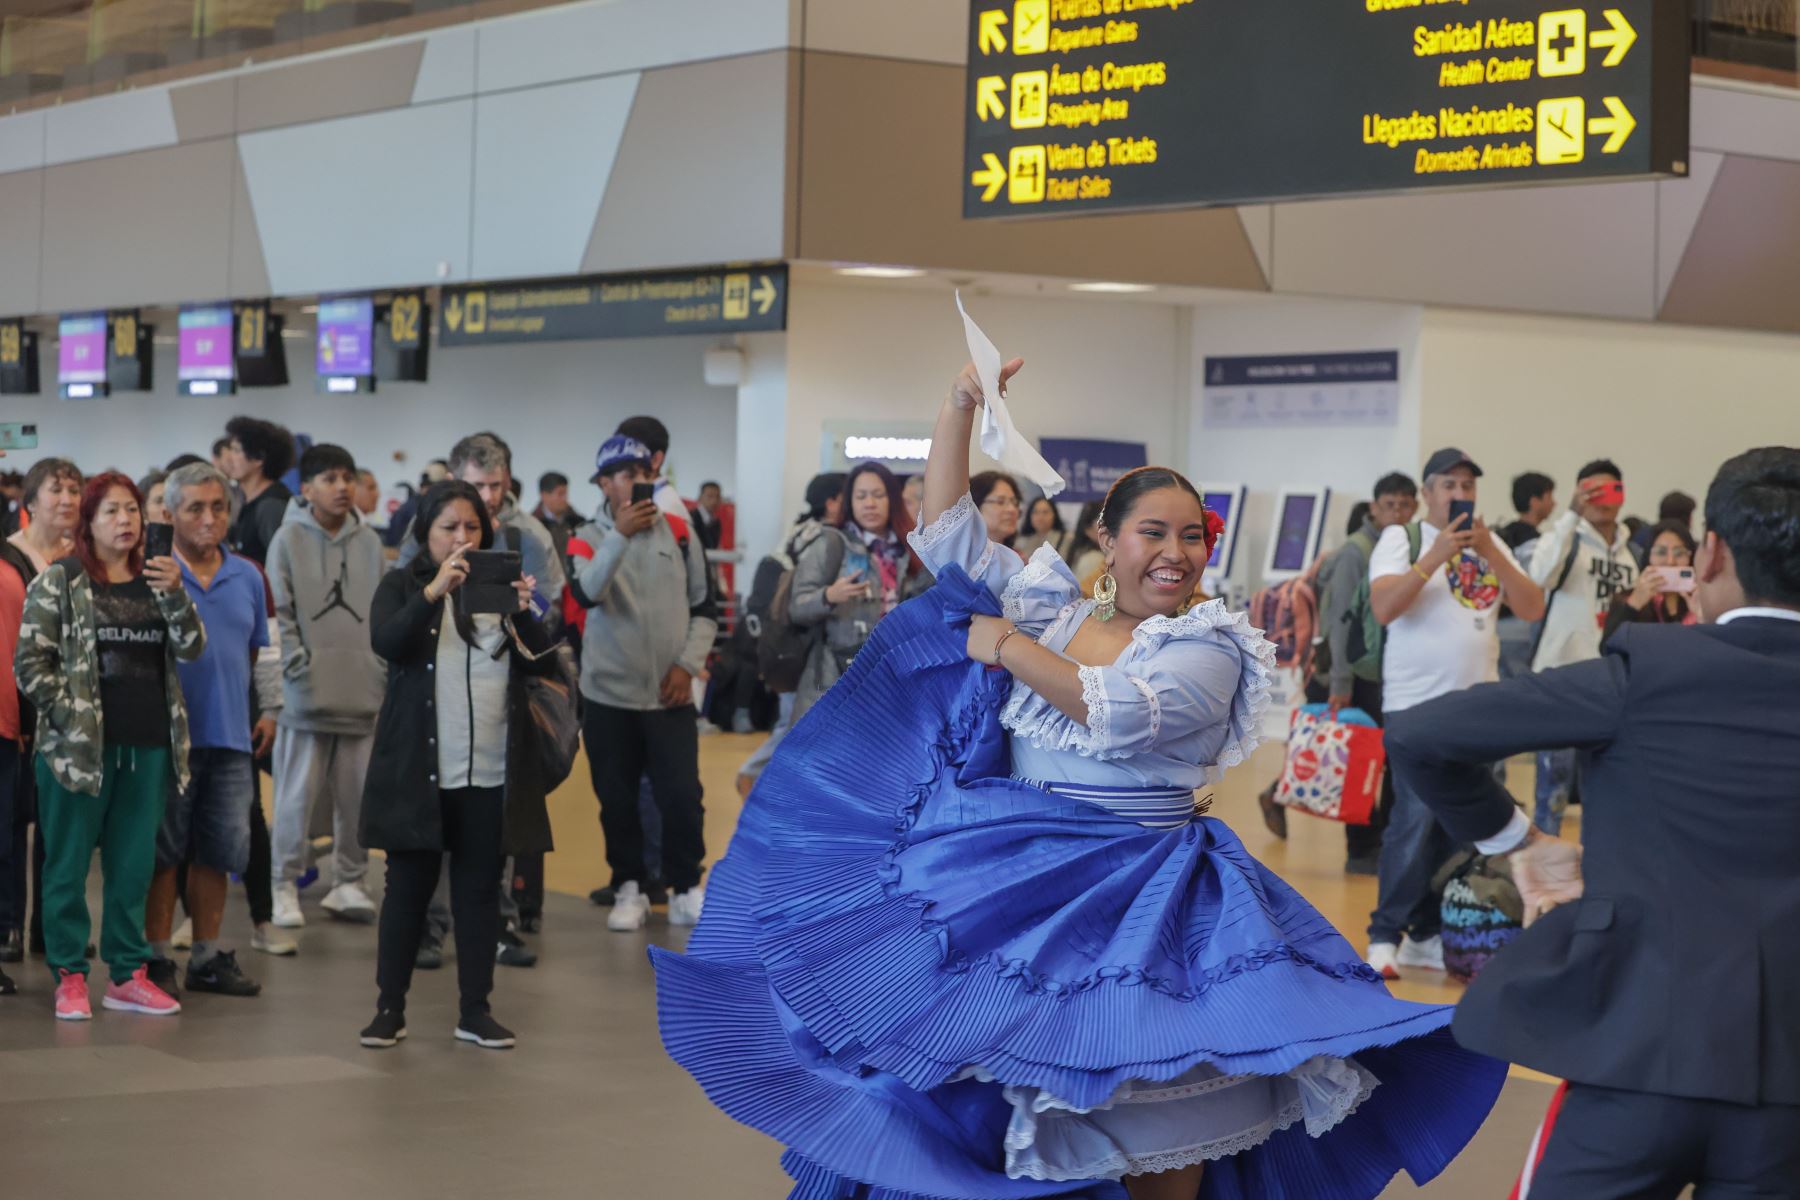 Turistas y personas que esperaban la llegada de sus familiares en el Aeropuerto Internacional Jorge Chávez se animaron a bailar con los danzantes de marinera y festejo, en el marco de la actividad ofrecida por el Día de la Canción Criolla. Foto: ANDINA/Andrés Valle.